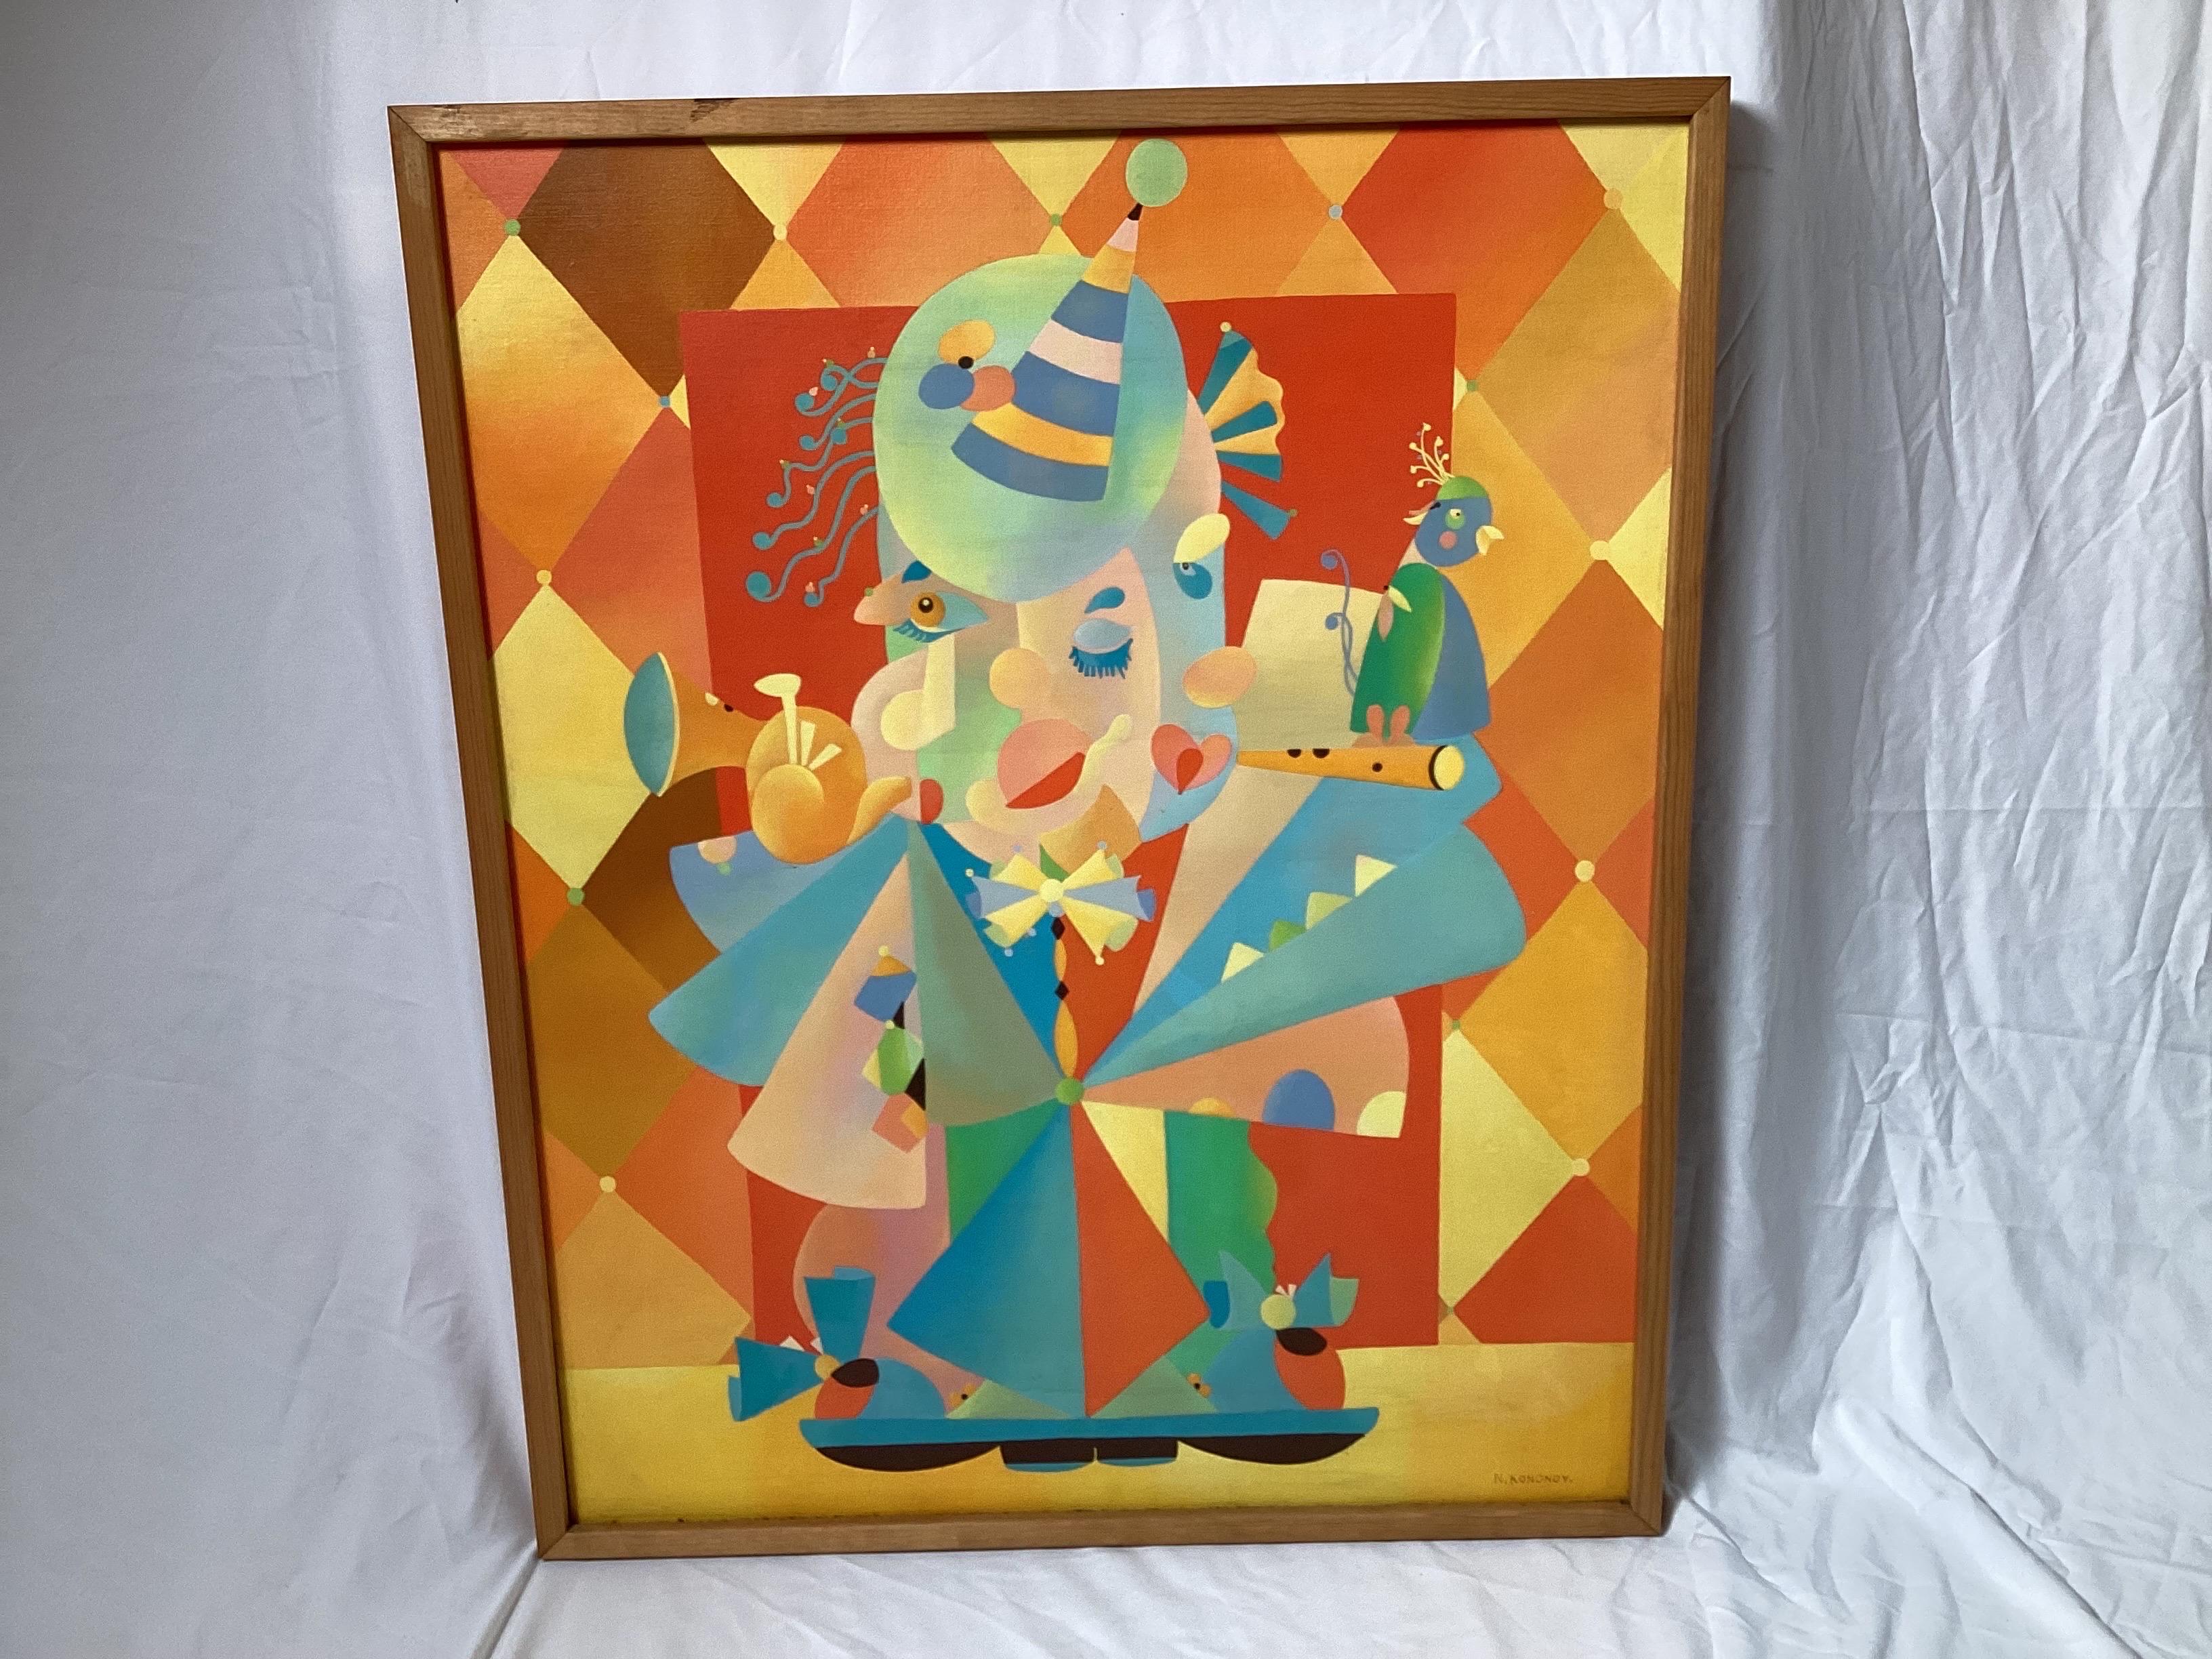 Öl auf Leinwand der russischen Künstlerin Natalya Prager Kononov (1935-2000). Das Gemälde in leuchtenden Farben, eine lustige moderne abstrakte mit einer Partei fühlen, Hörner, Konfetti, Papagei, Party Hüte, in einem einfachen schlanken Holzrahmen